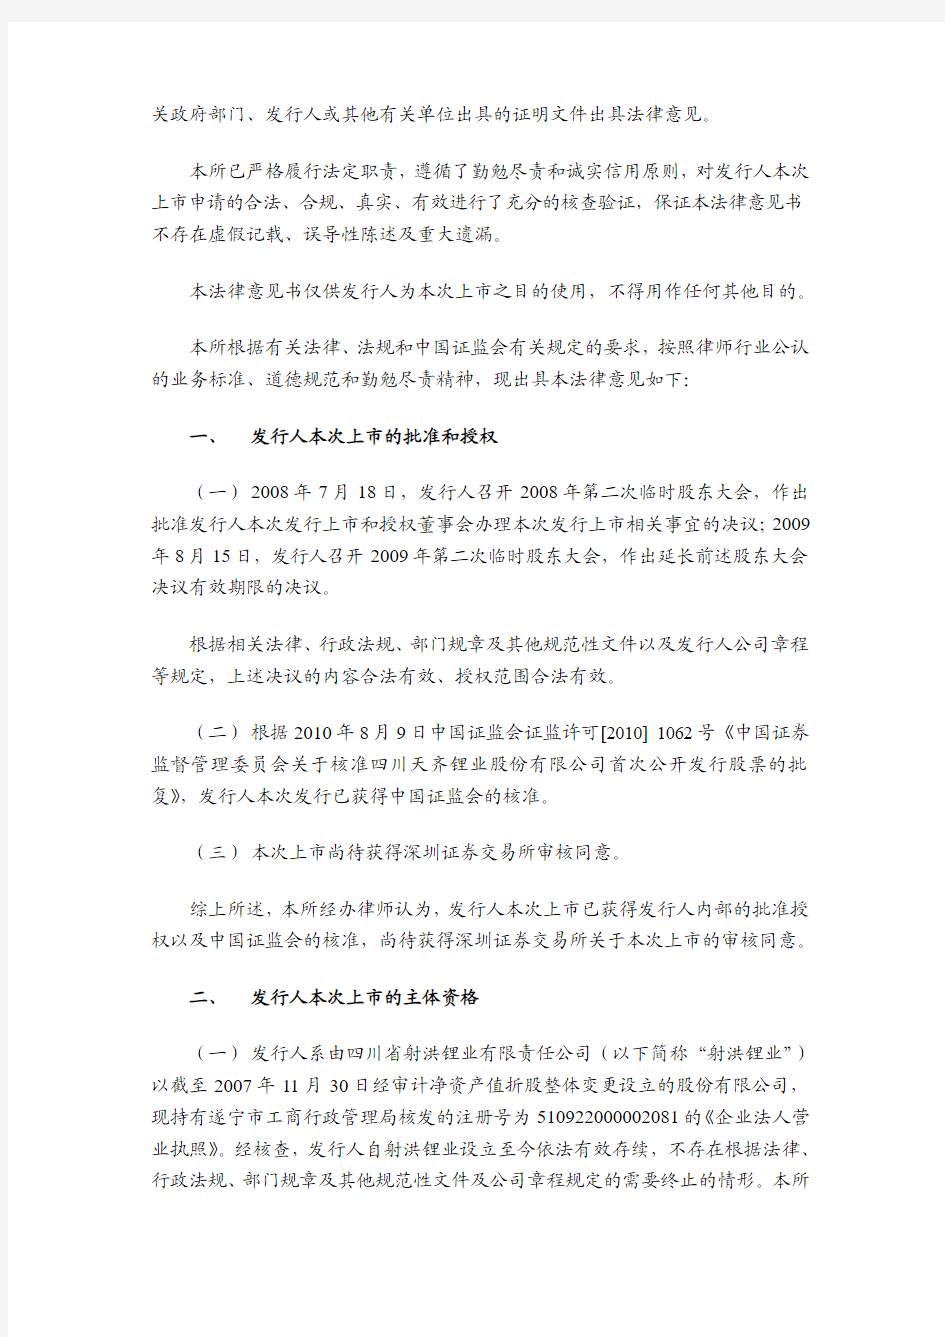 天齐锂业：北京市金杜律师事务所关于公司首次公开发行股票于深圳证券交易所上市的法律意见书 2010-08-30